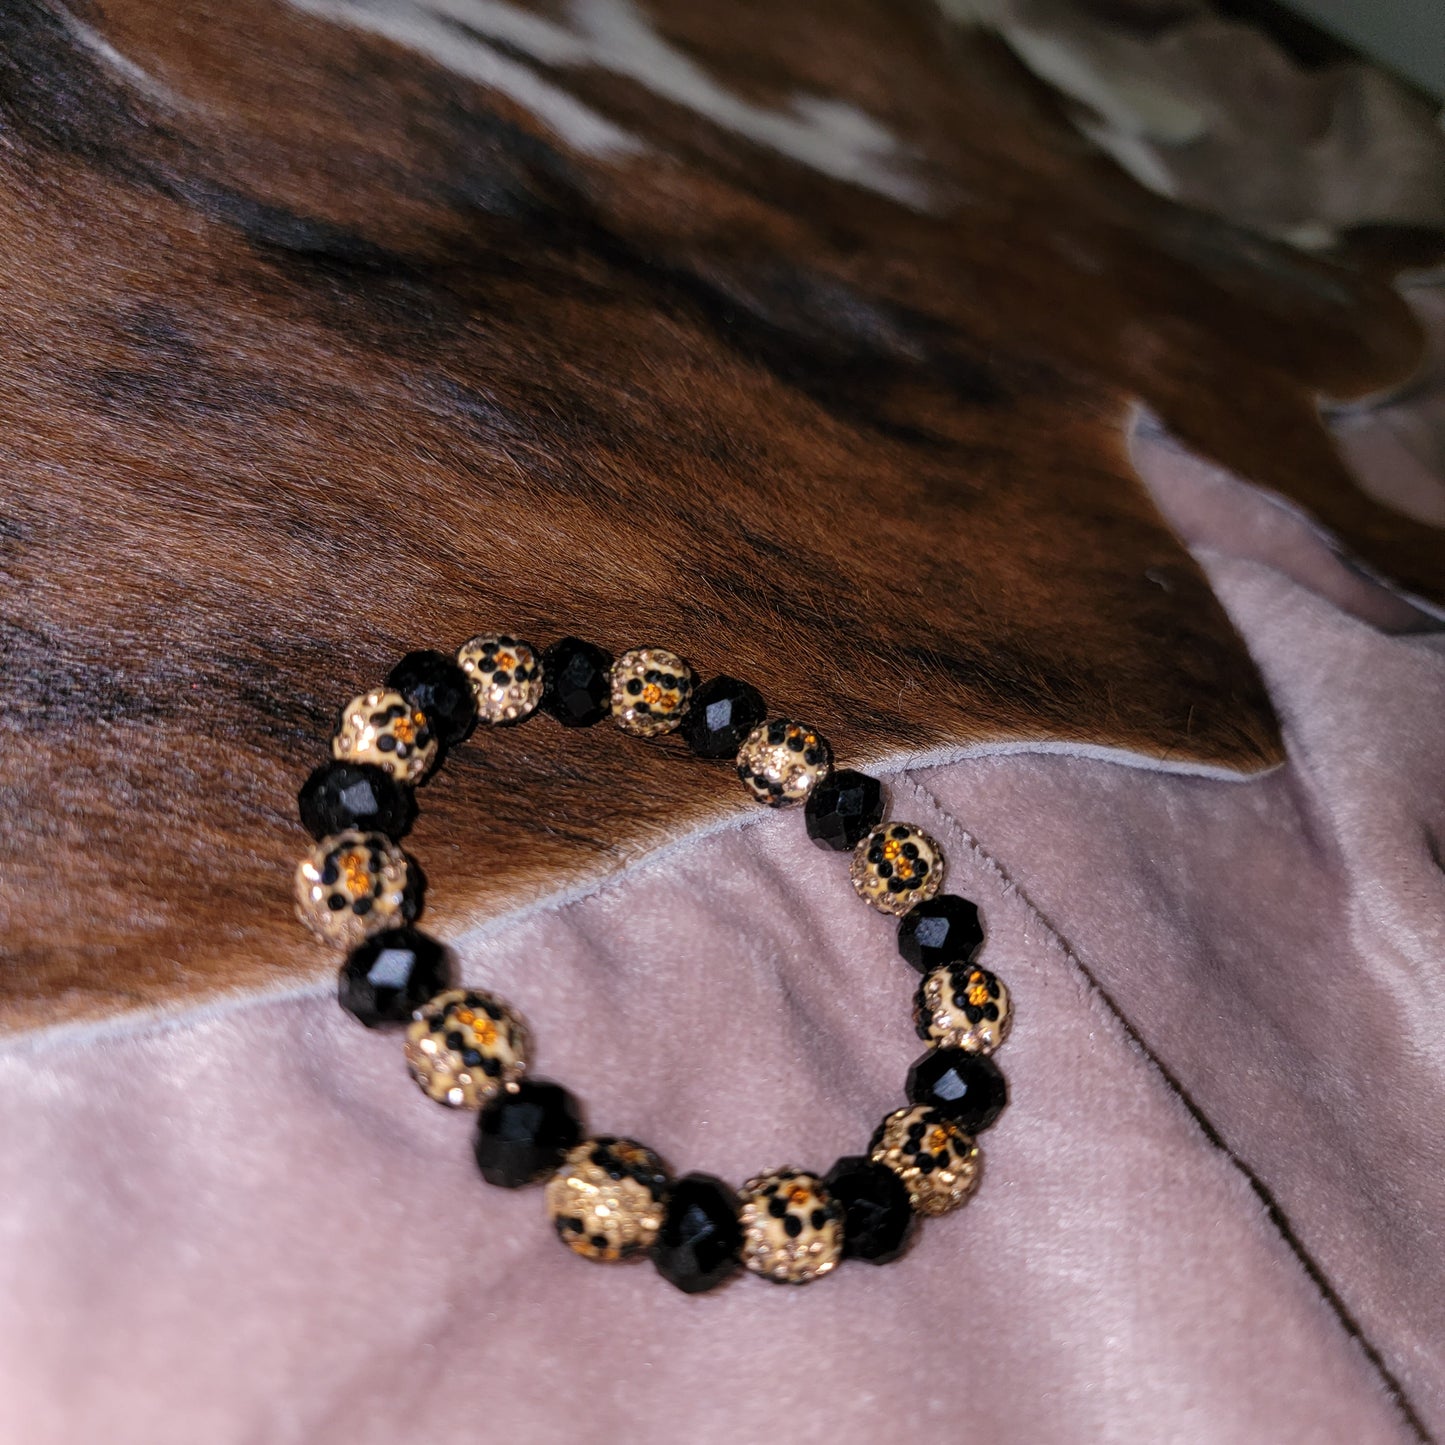 Sparkle Bracelets Black and Leopard Sparkle by The Rustic Redbud Boutique | The Rustic Redbud Boutique